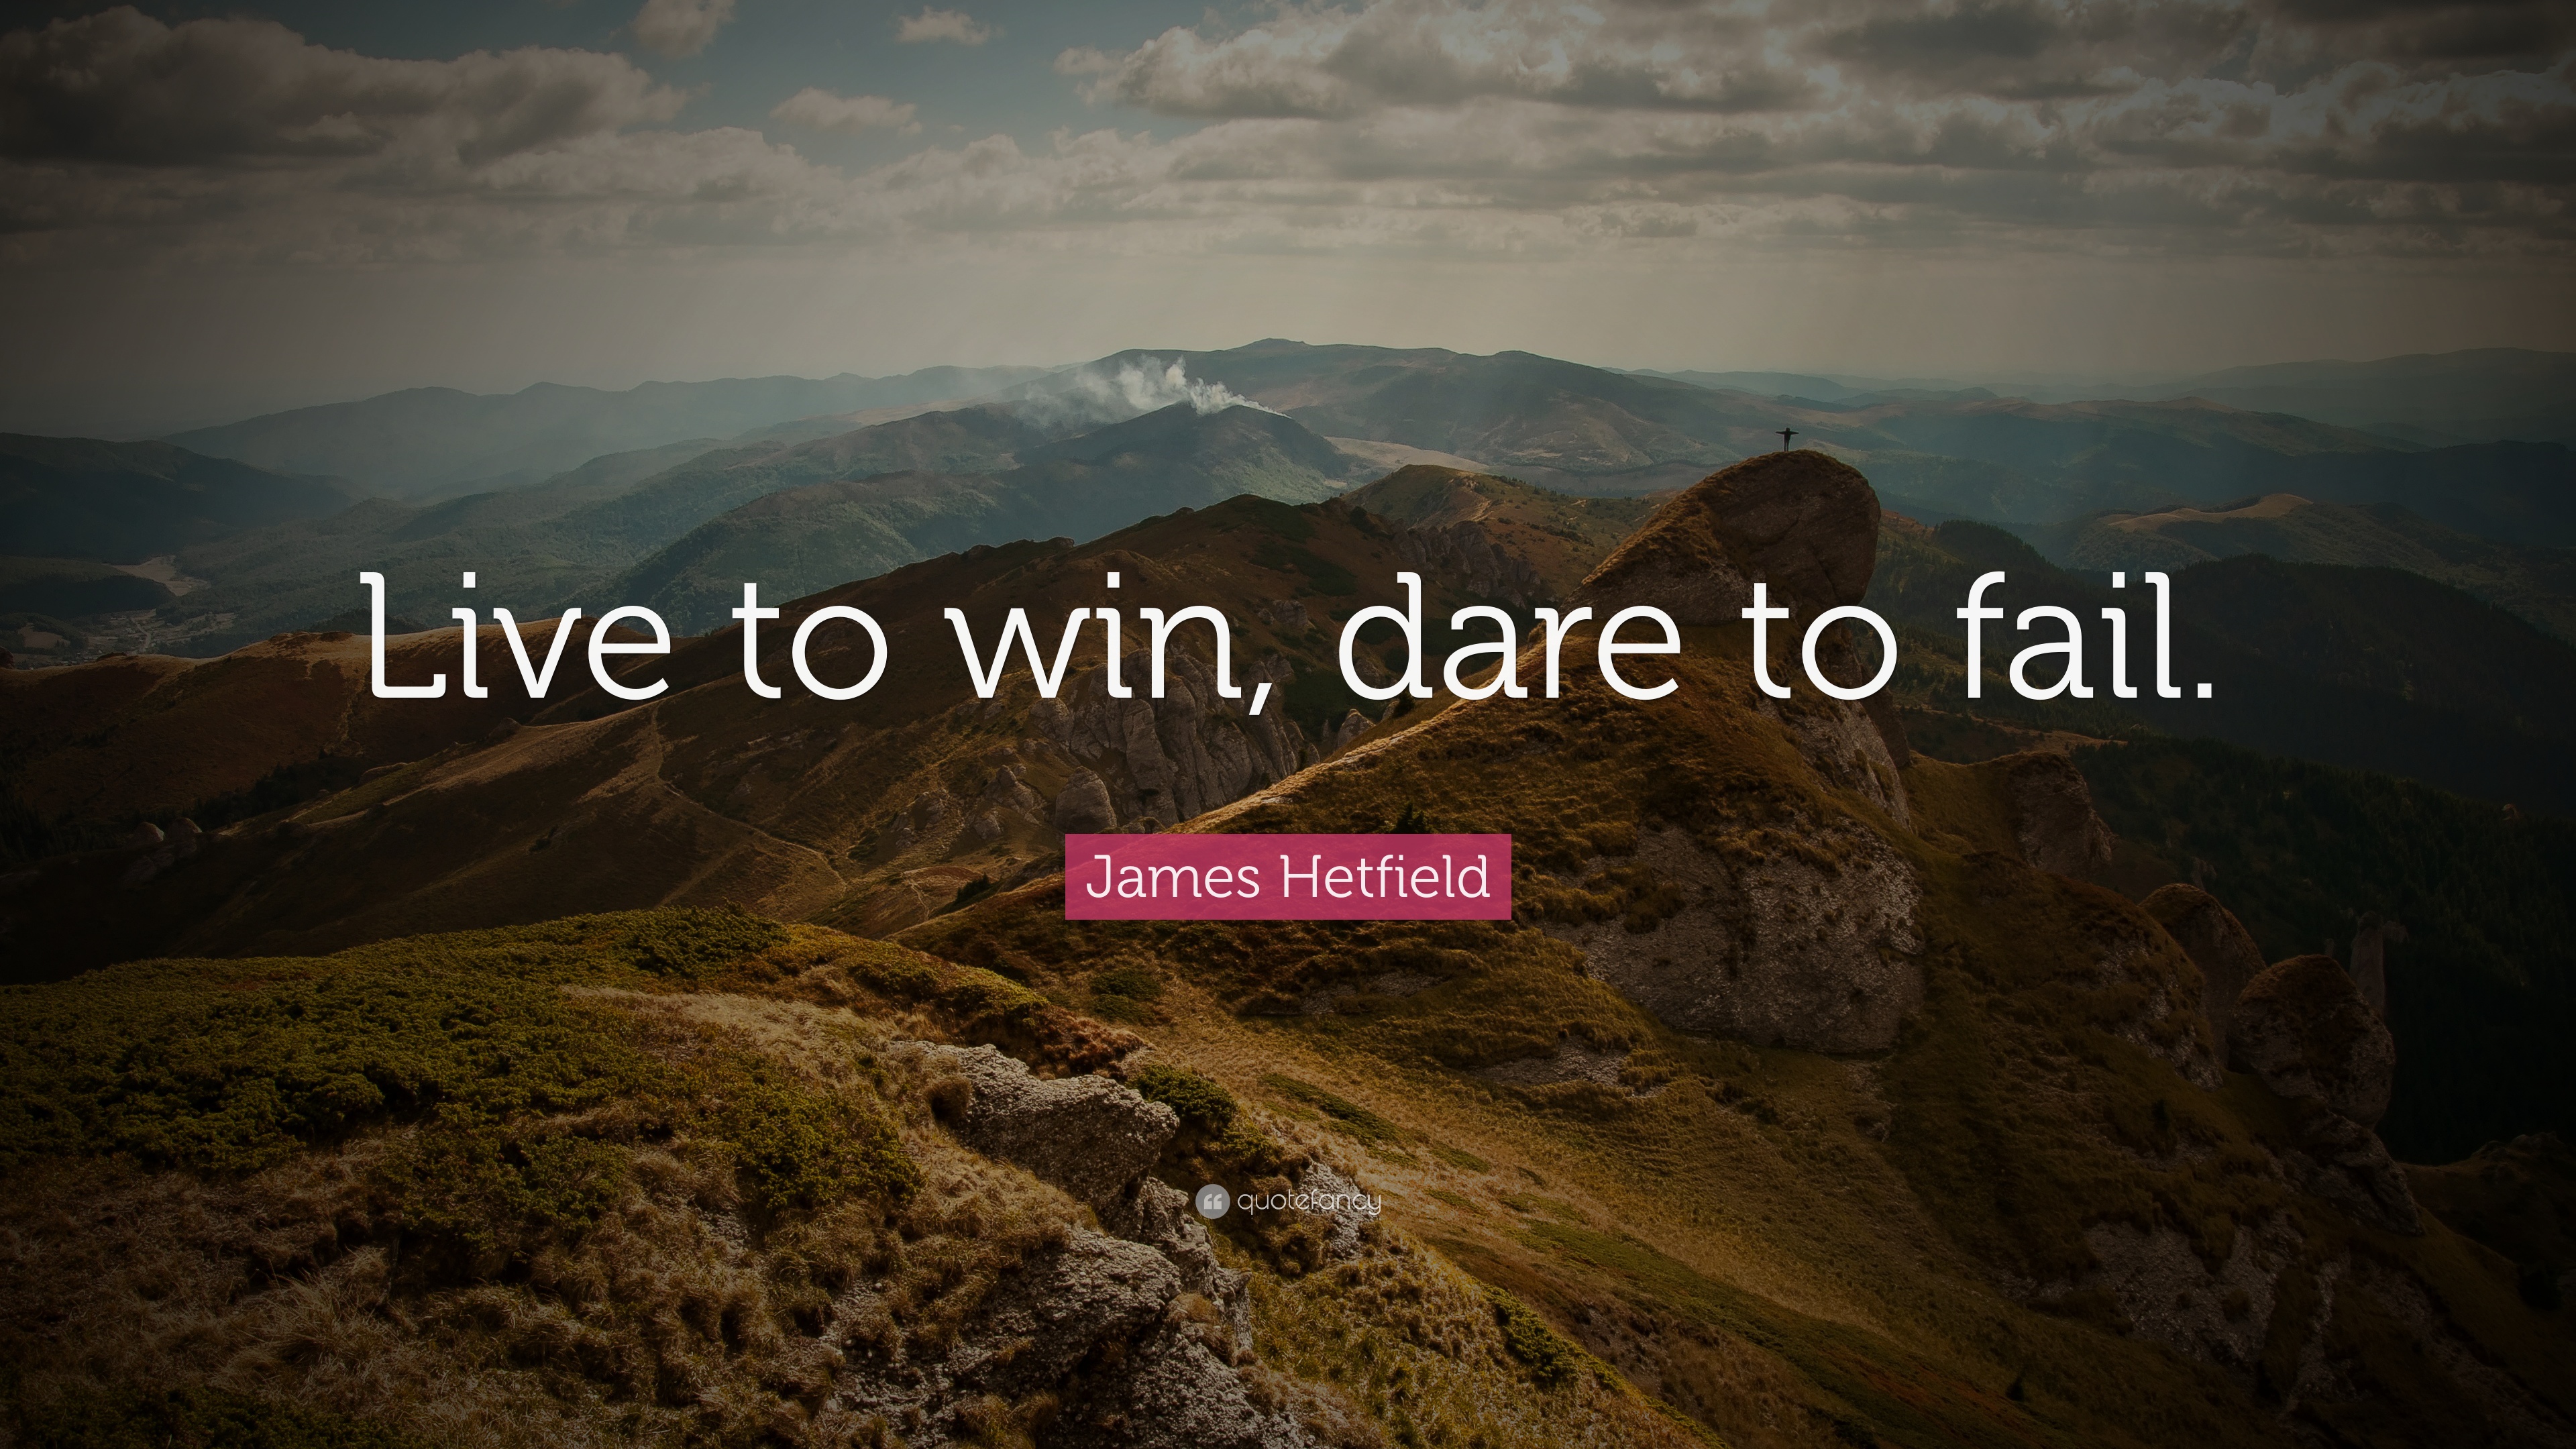 10 Best James Hetfield Quotes